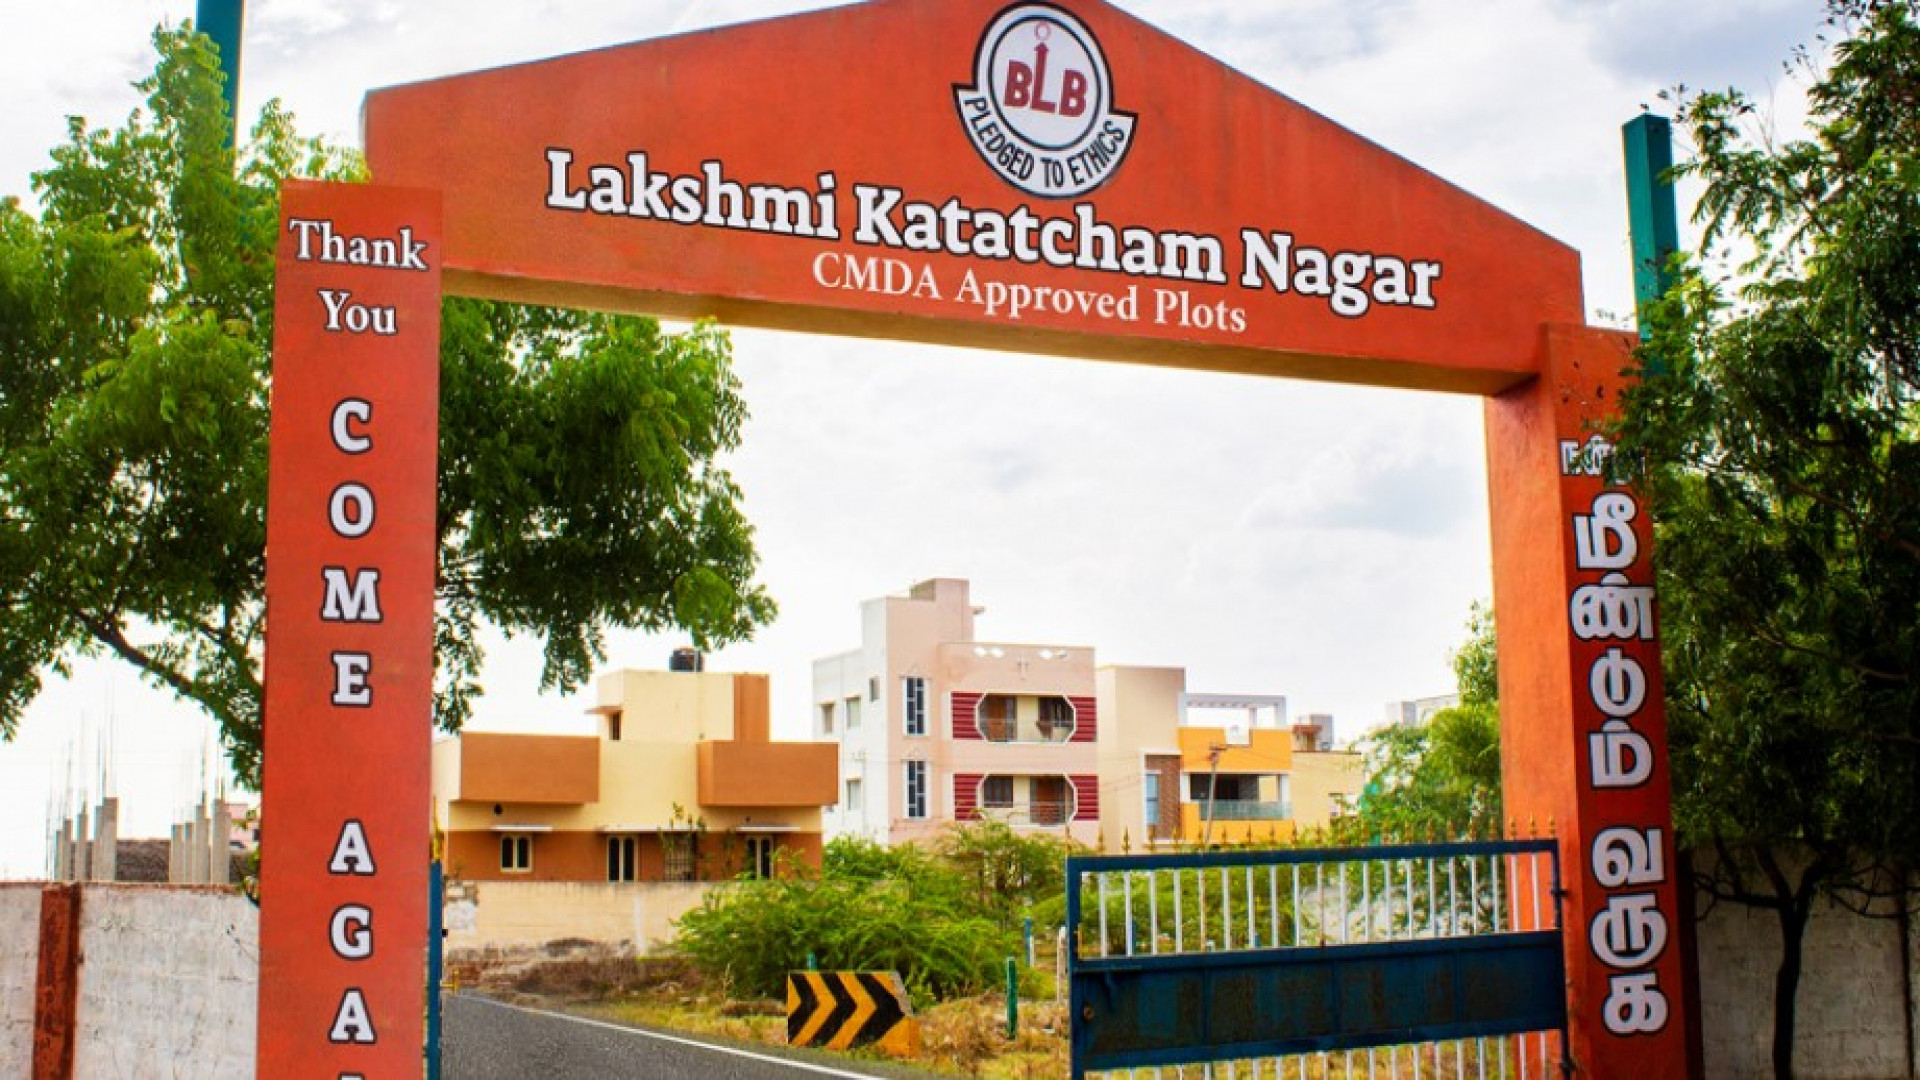 BLB Lakshmi Katatcham Nagar